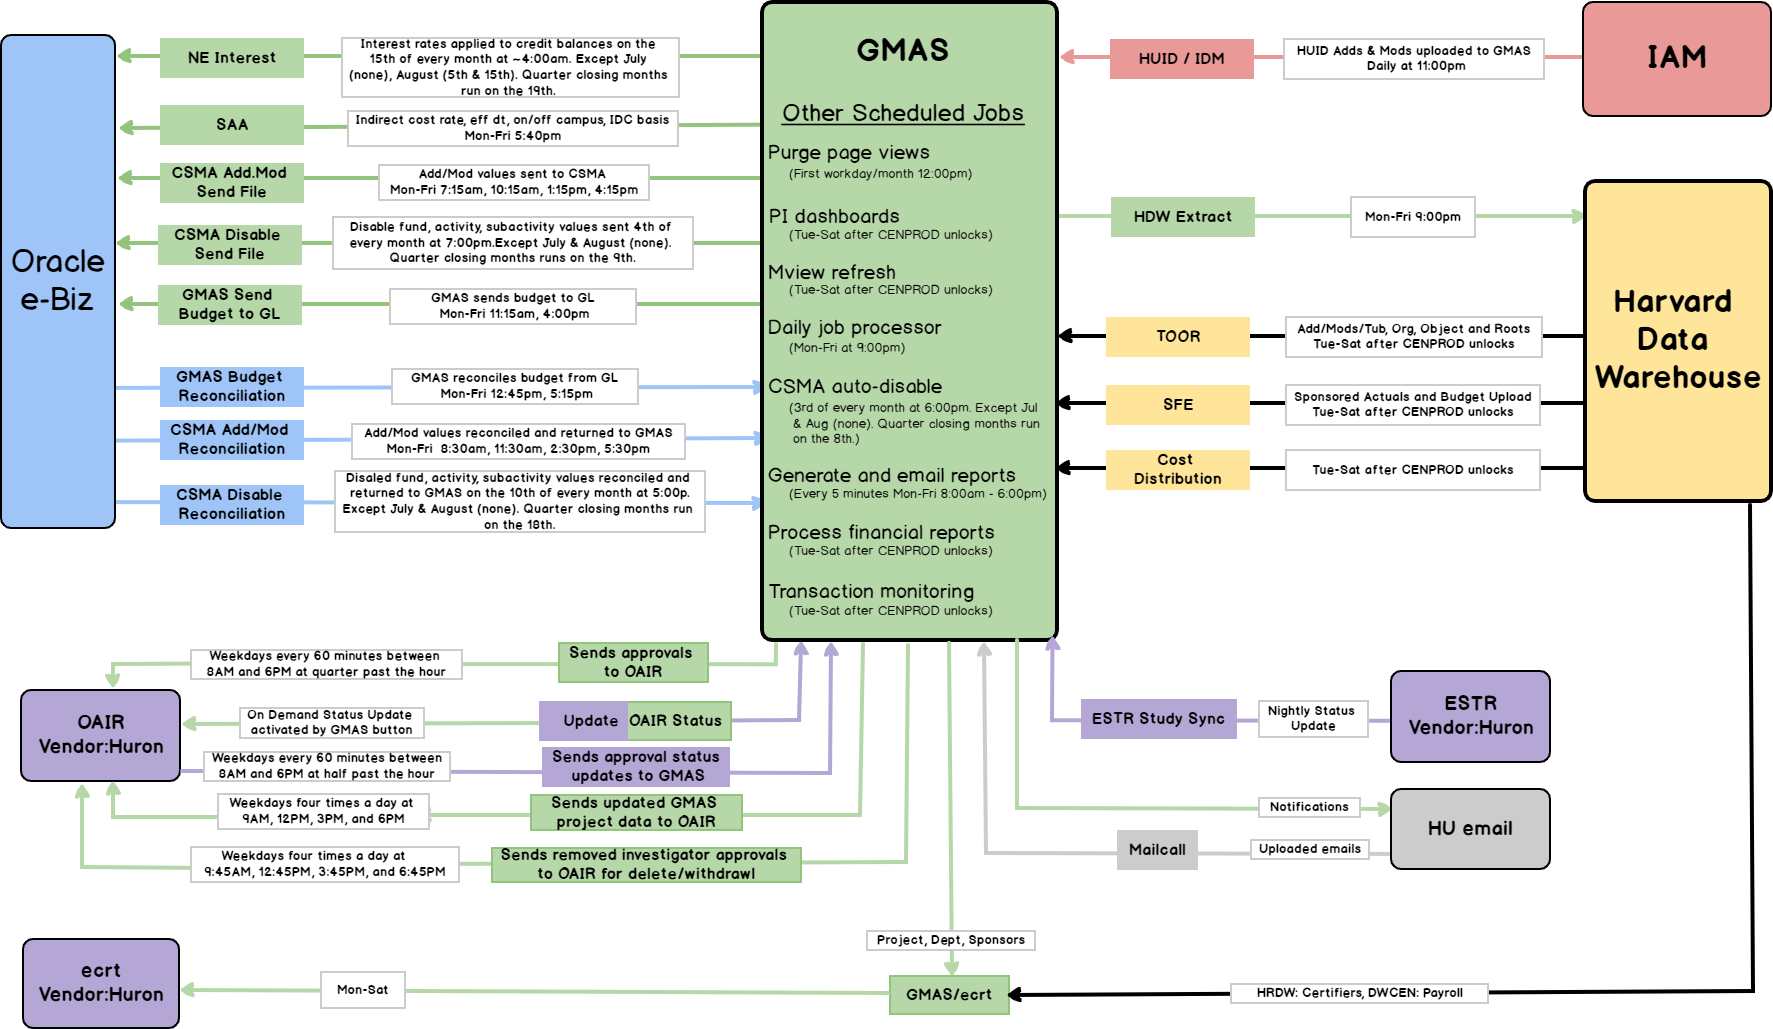 GMAS Interface Map